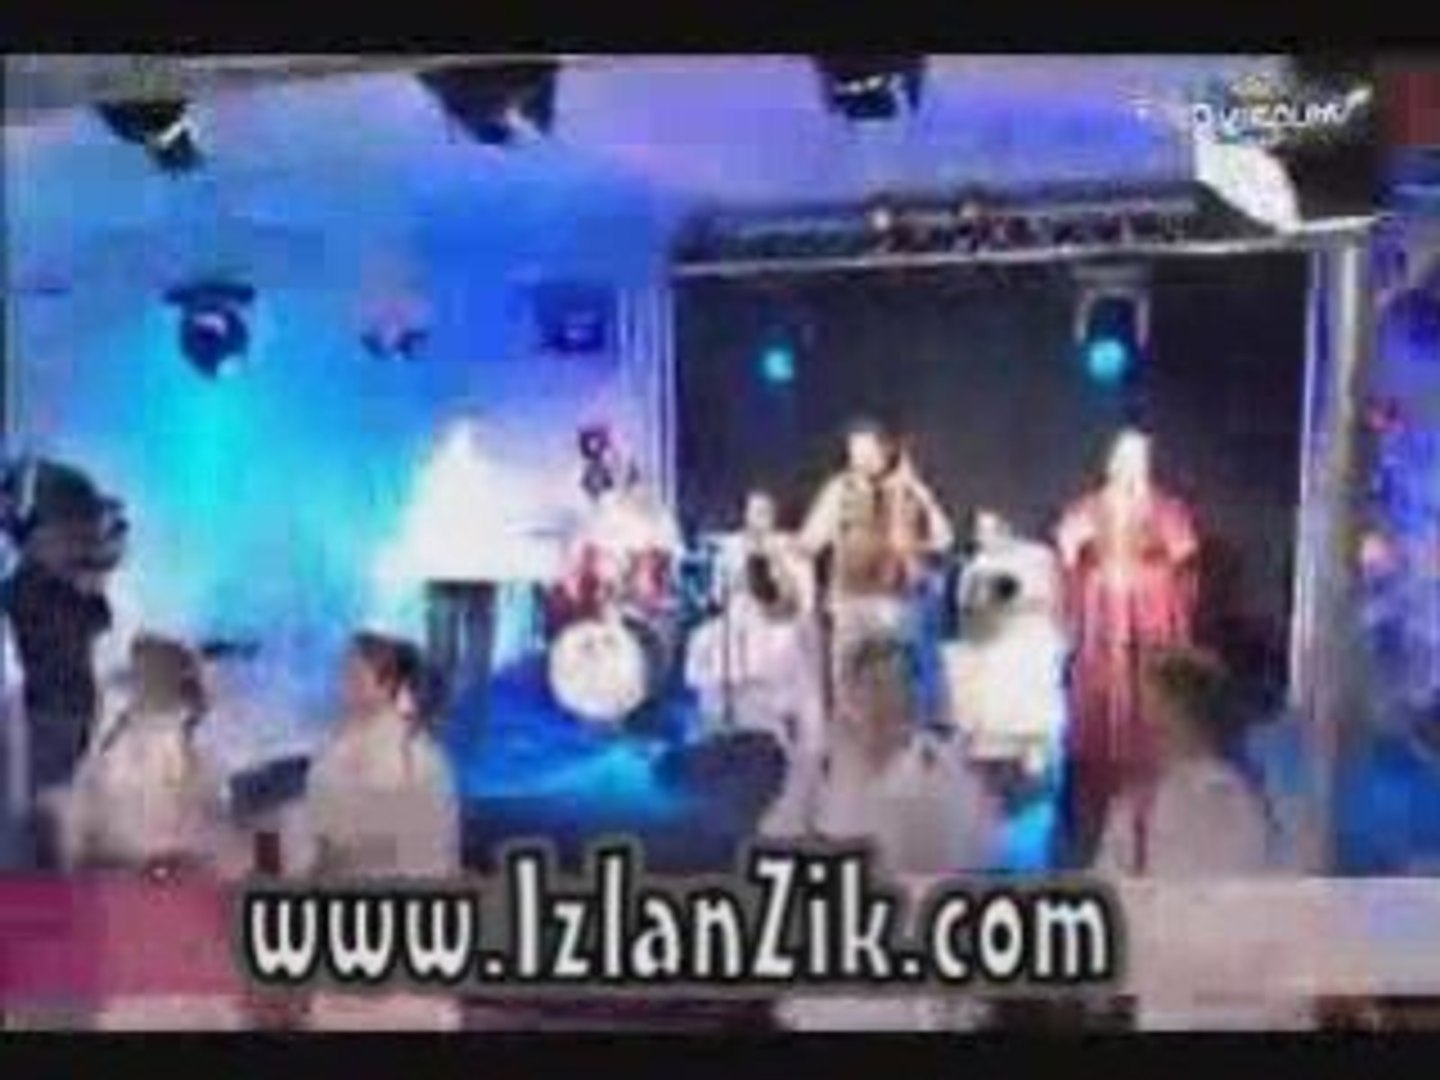 Ahouzar Abdelaziz 2008 - Asmoun - >> www.IzlanZik.com - Vidéo Dailymotion